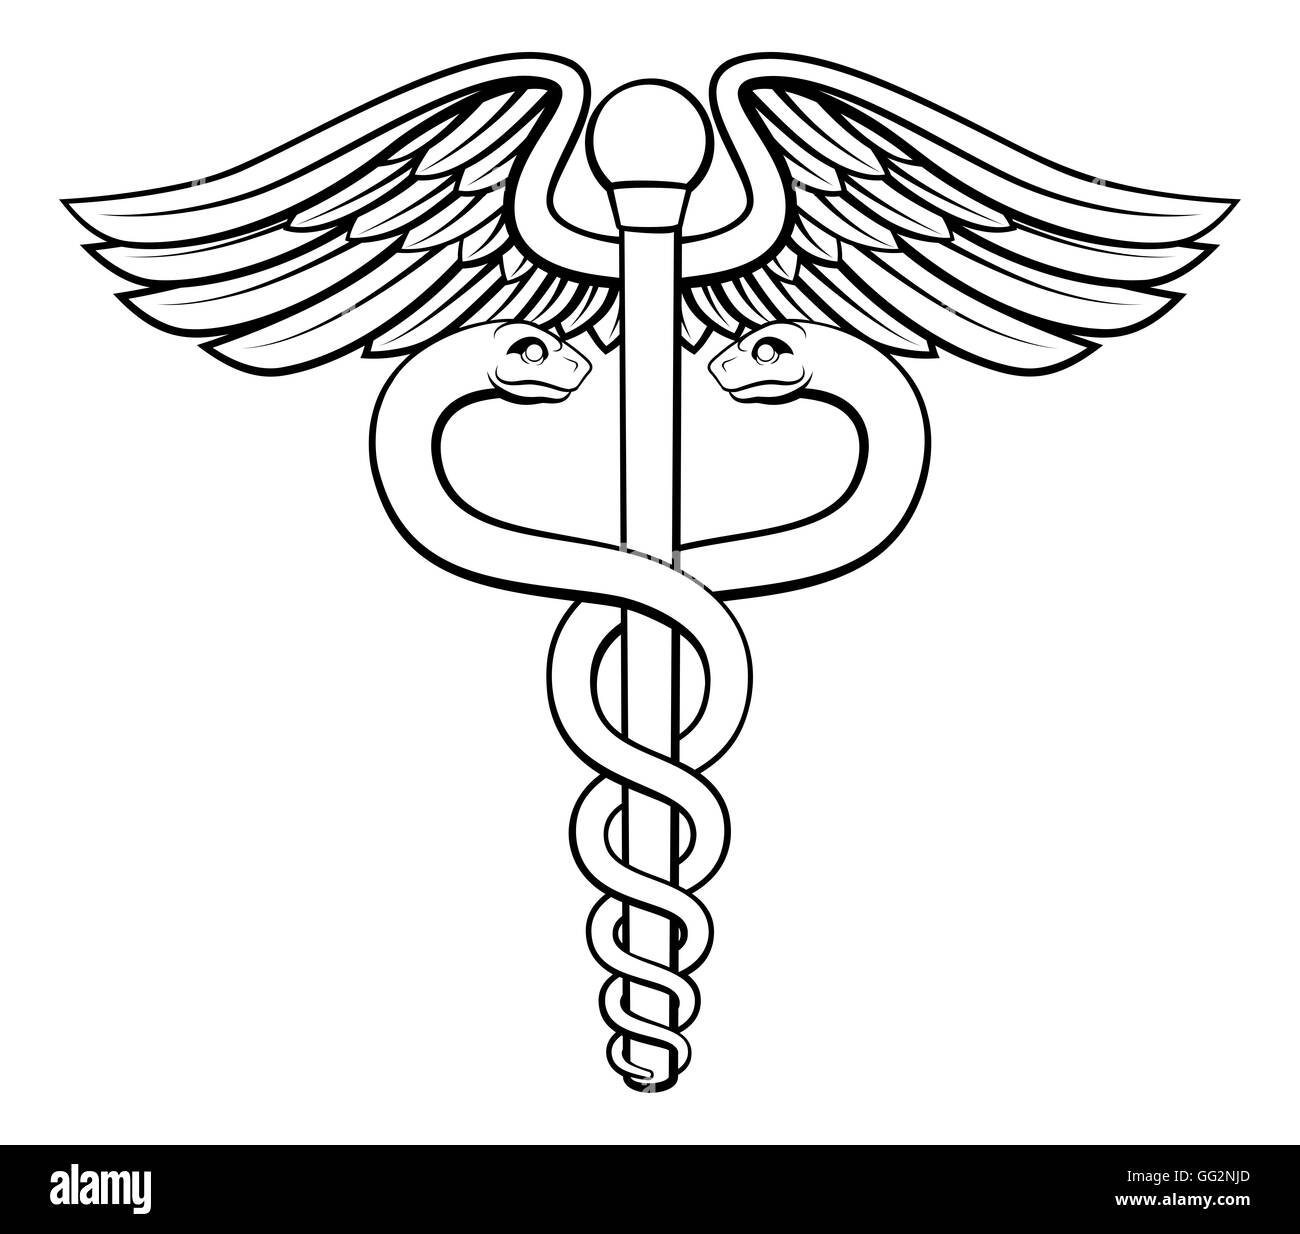 Una ilustración del caduceo símbolo de dos serpientes entrelazadas alrededor de una varilla de alado. Asociado con la curación y la medicina. Foto de stock